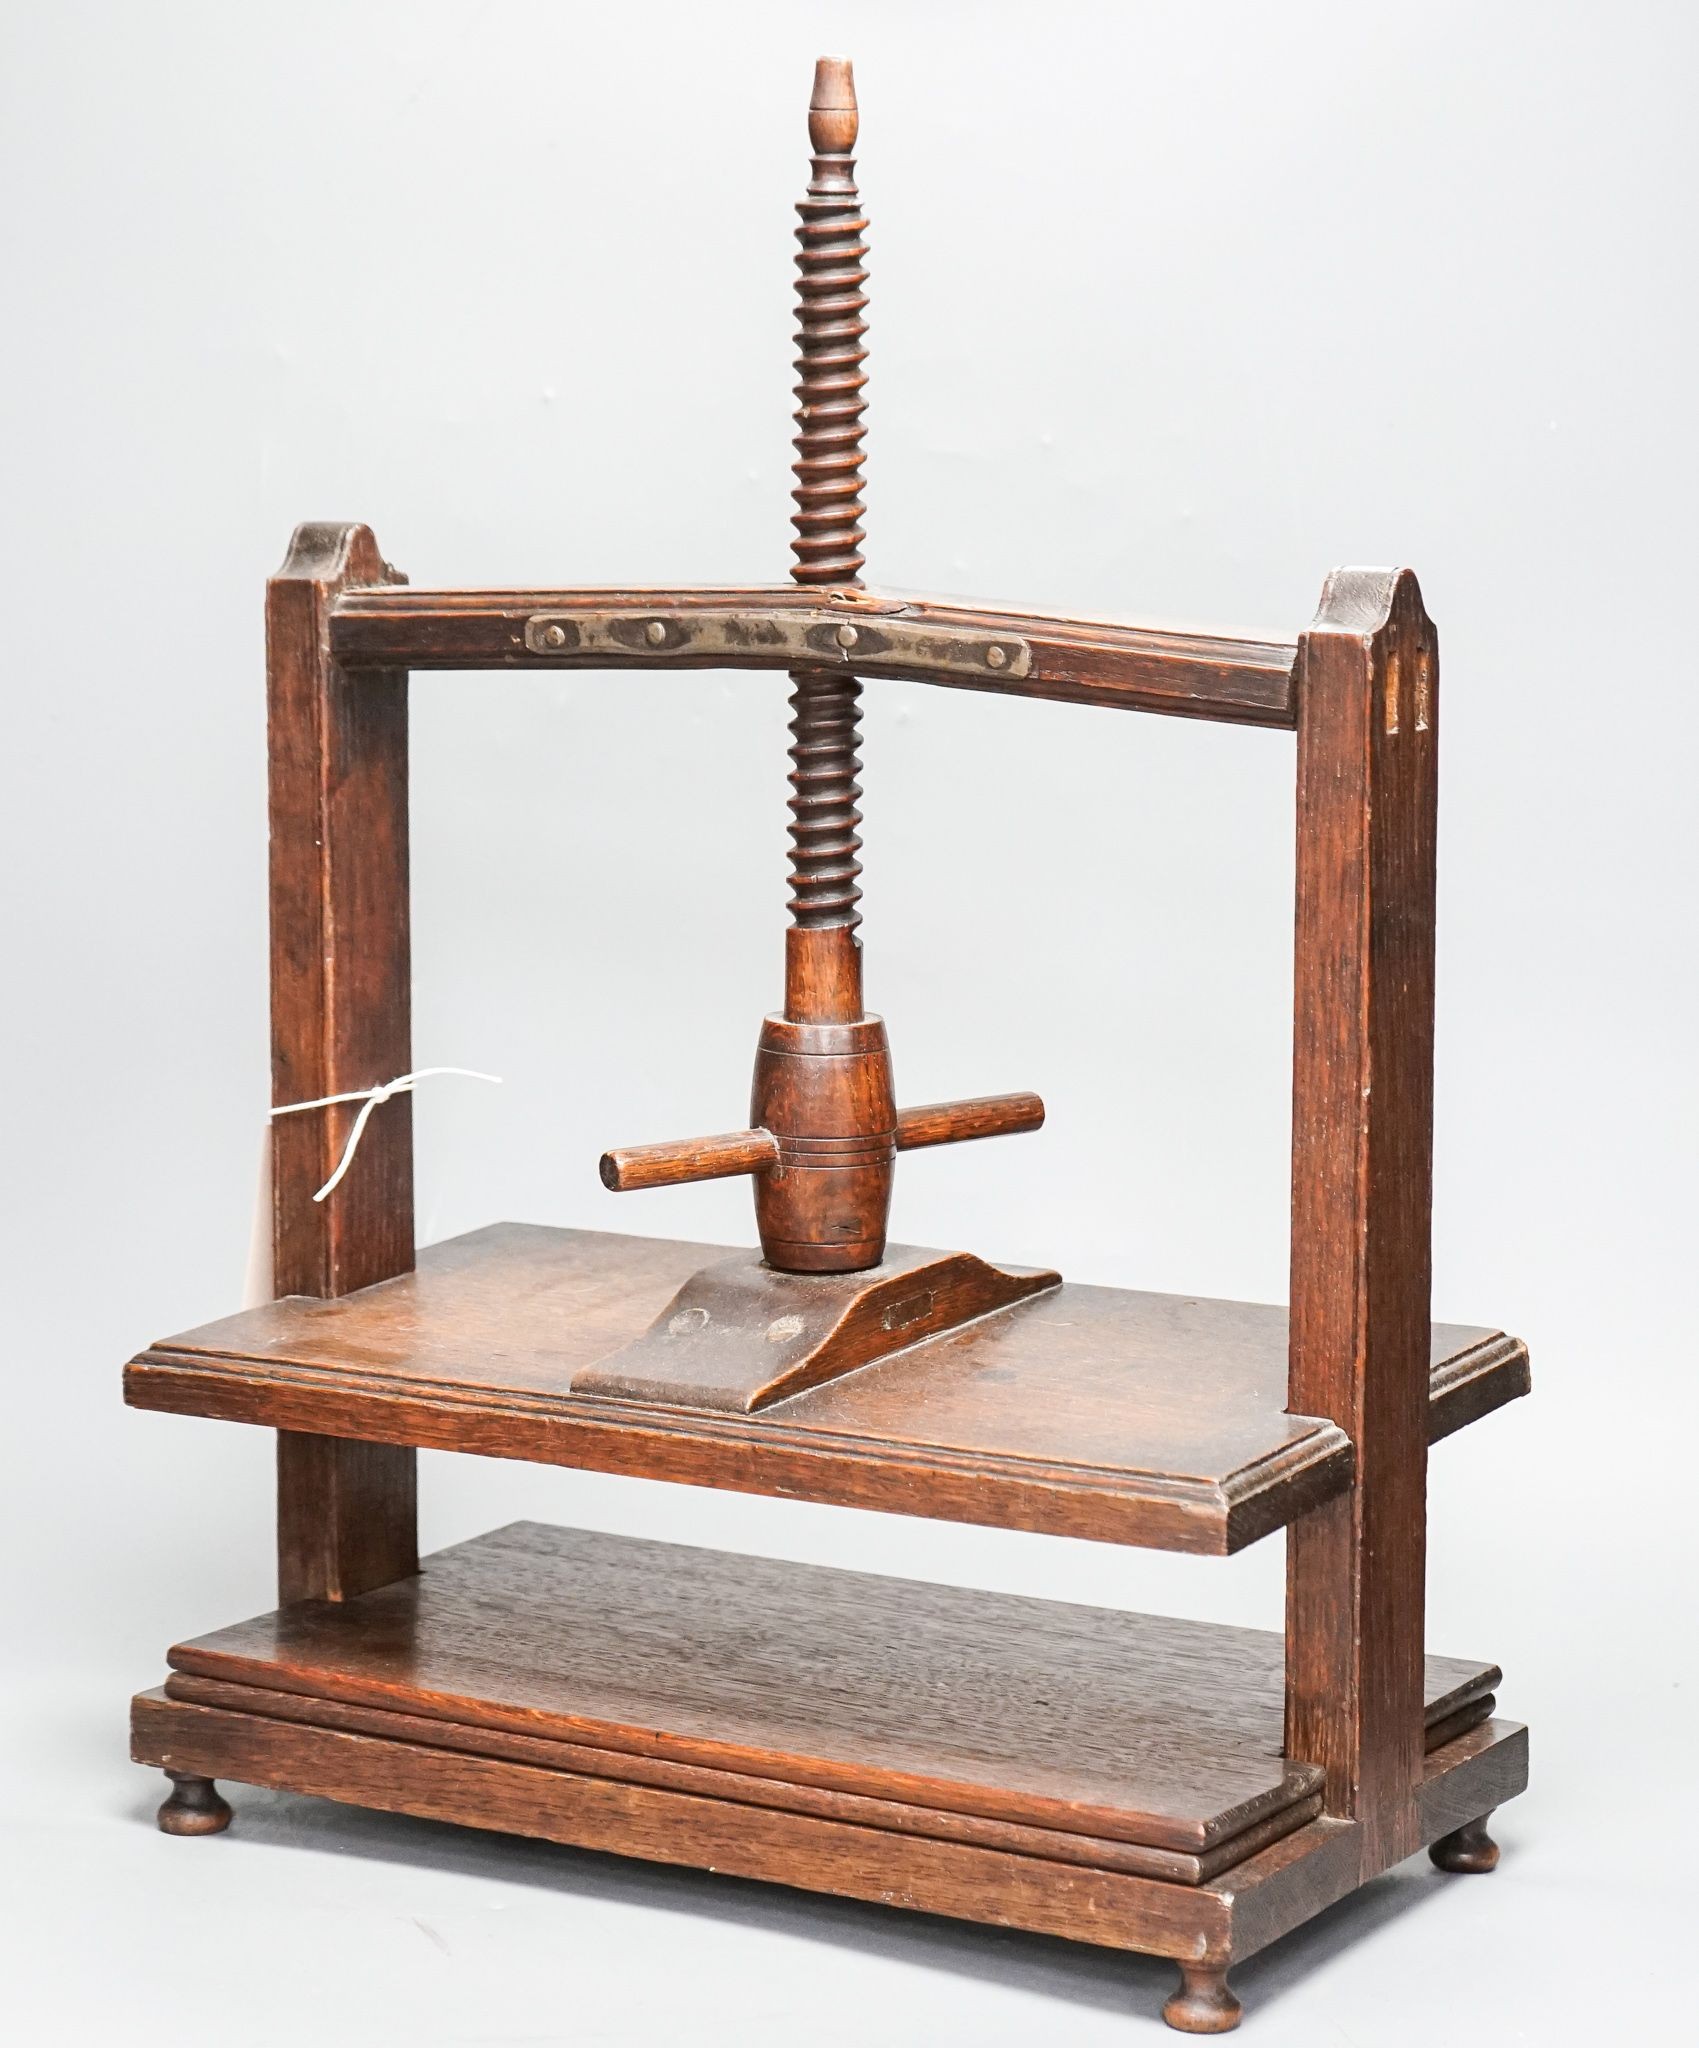 A 19th century oak book press, 38.5 cm wide